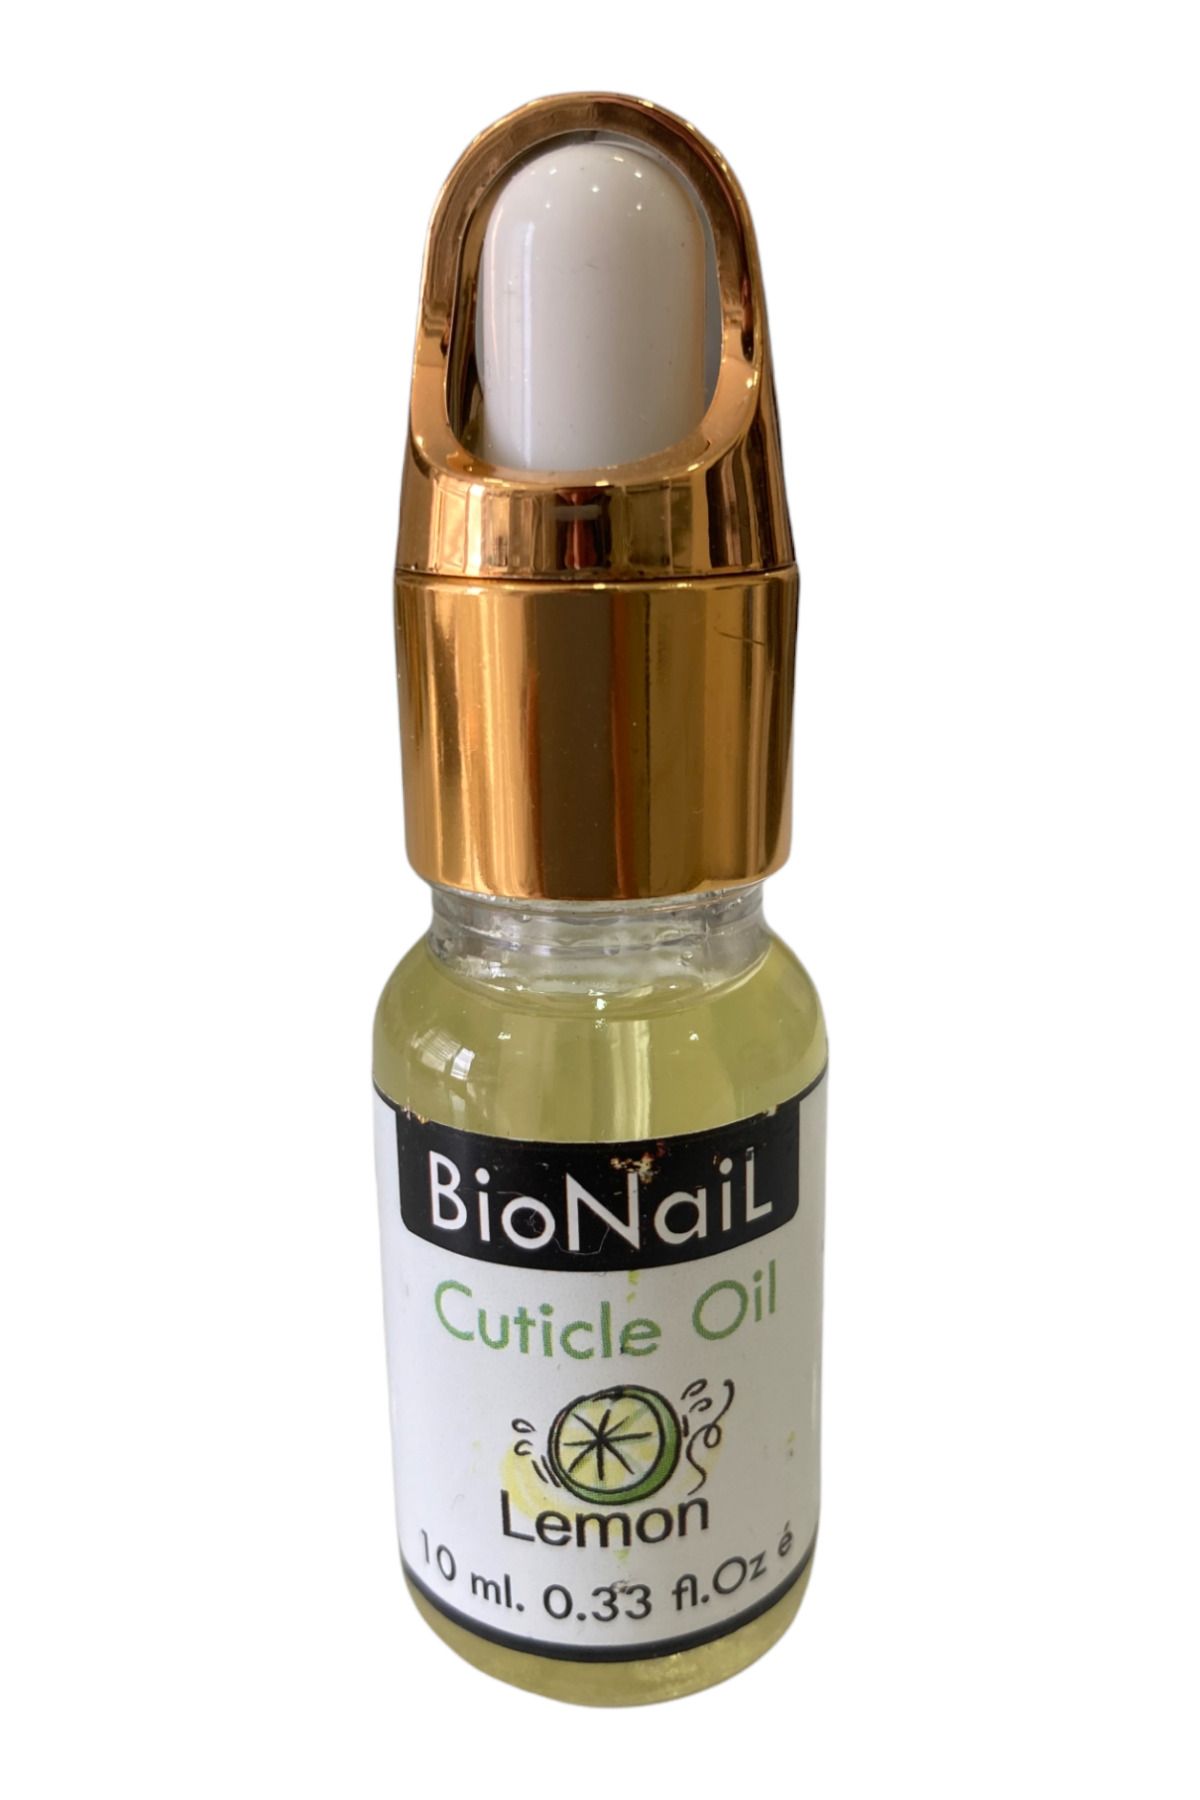 BioNaiL Cuticle Oil Tırnak Eti Yumuşatıcısı Yağ 10ml Tırnak Bakım Yağı Yüksek Kalite